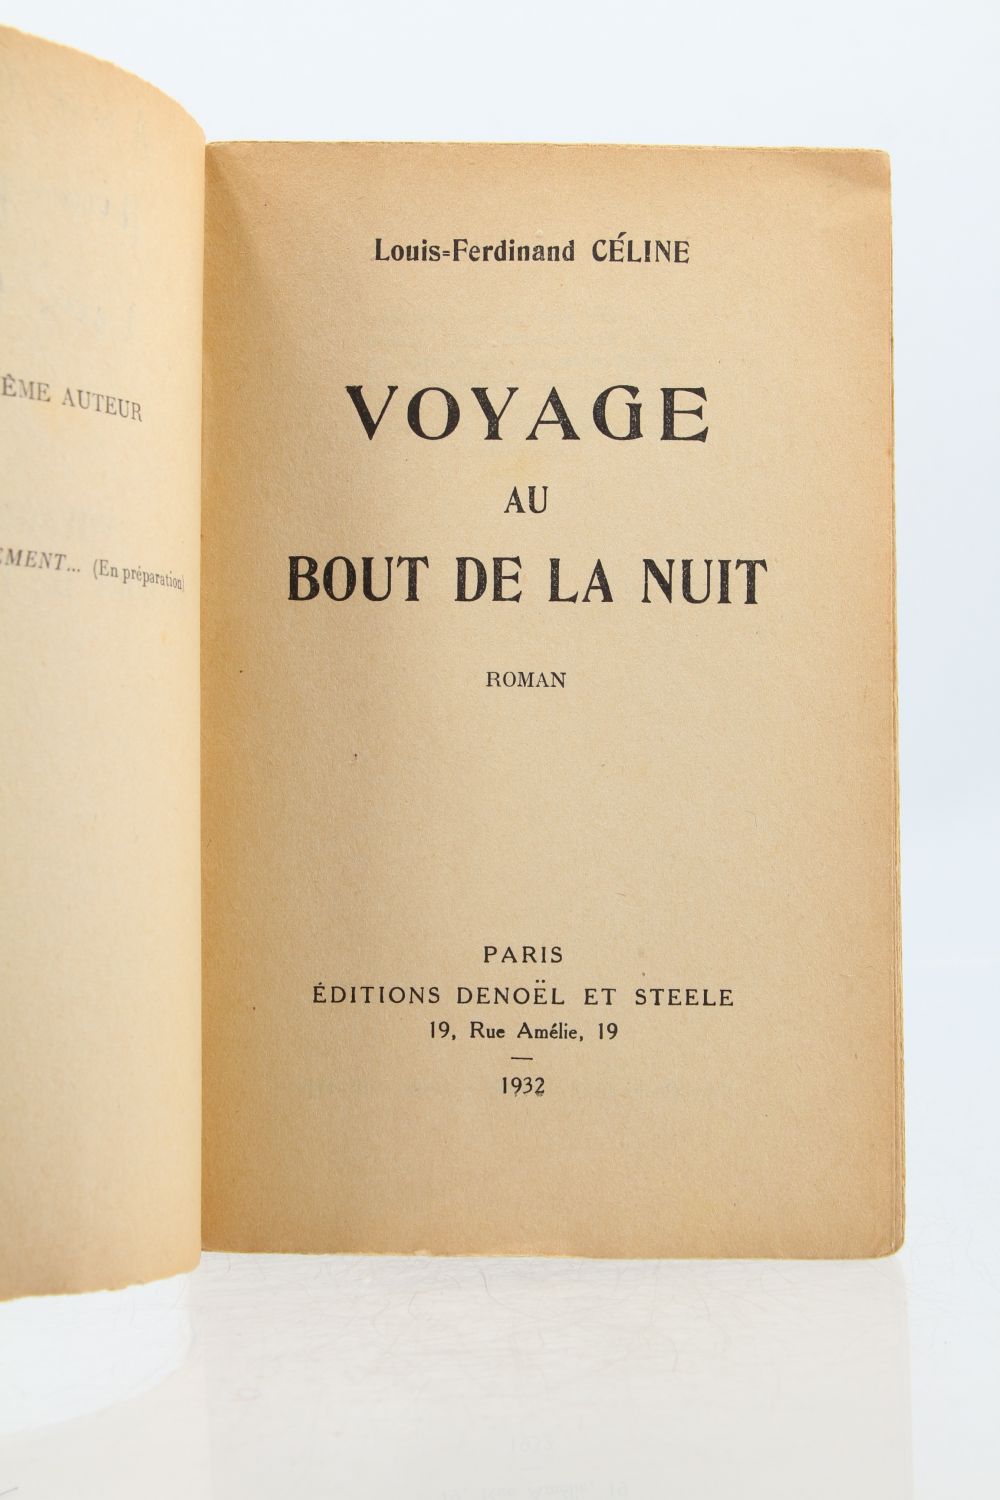 Voyage au bout de la nuit.,1932,The author's debut, inscribed to